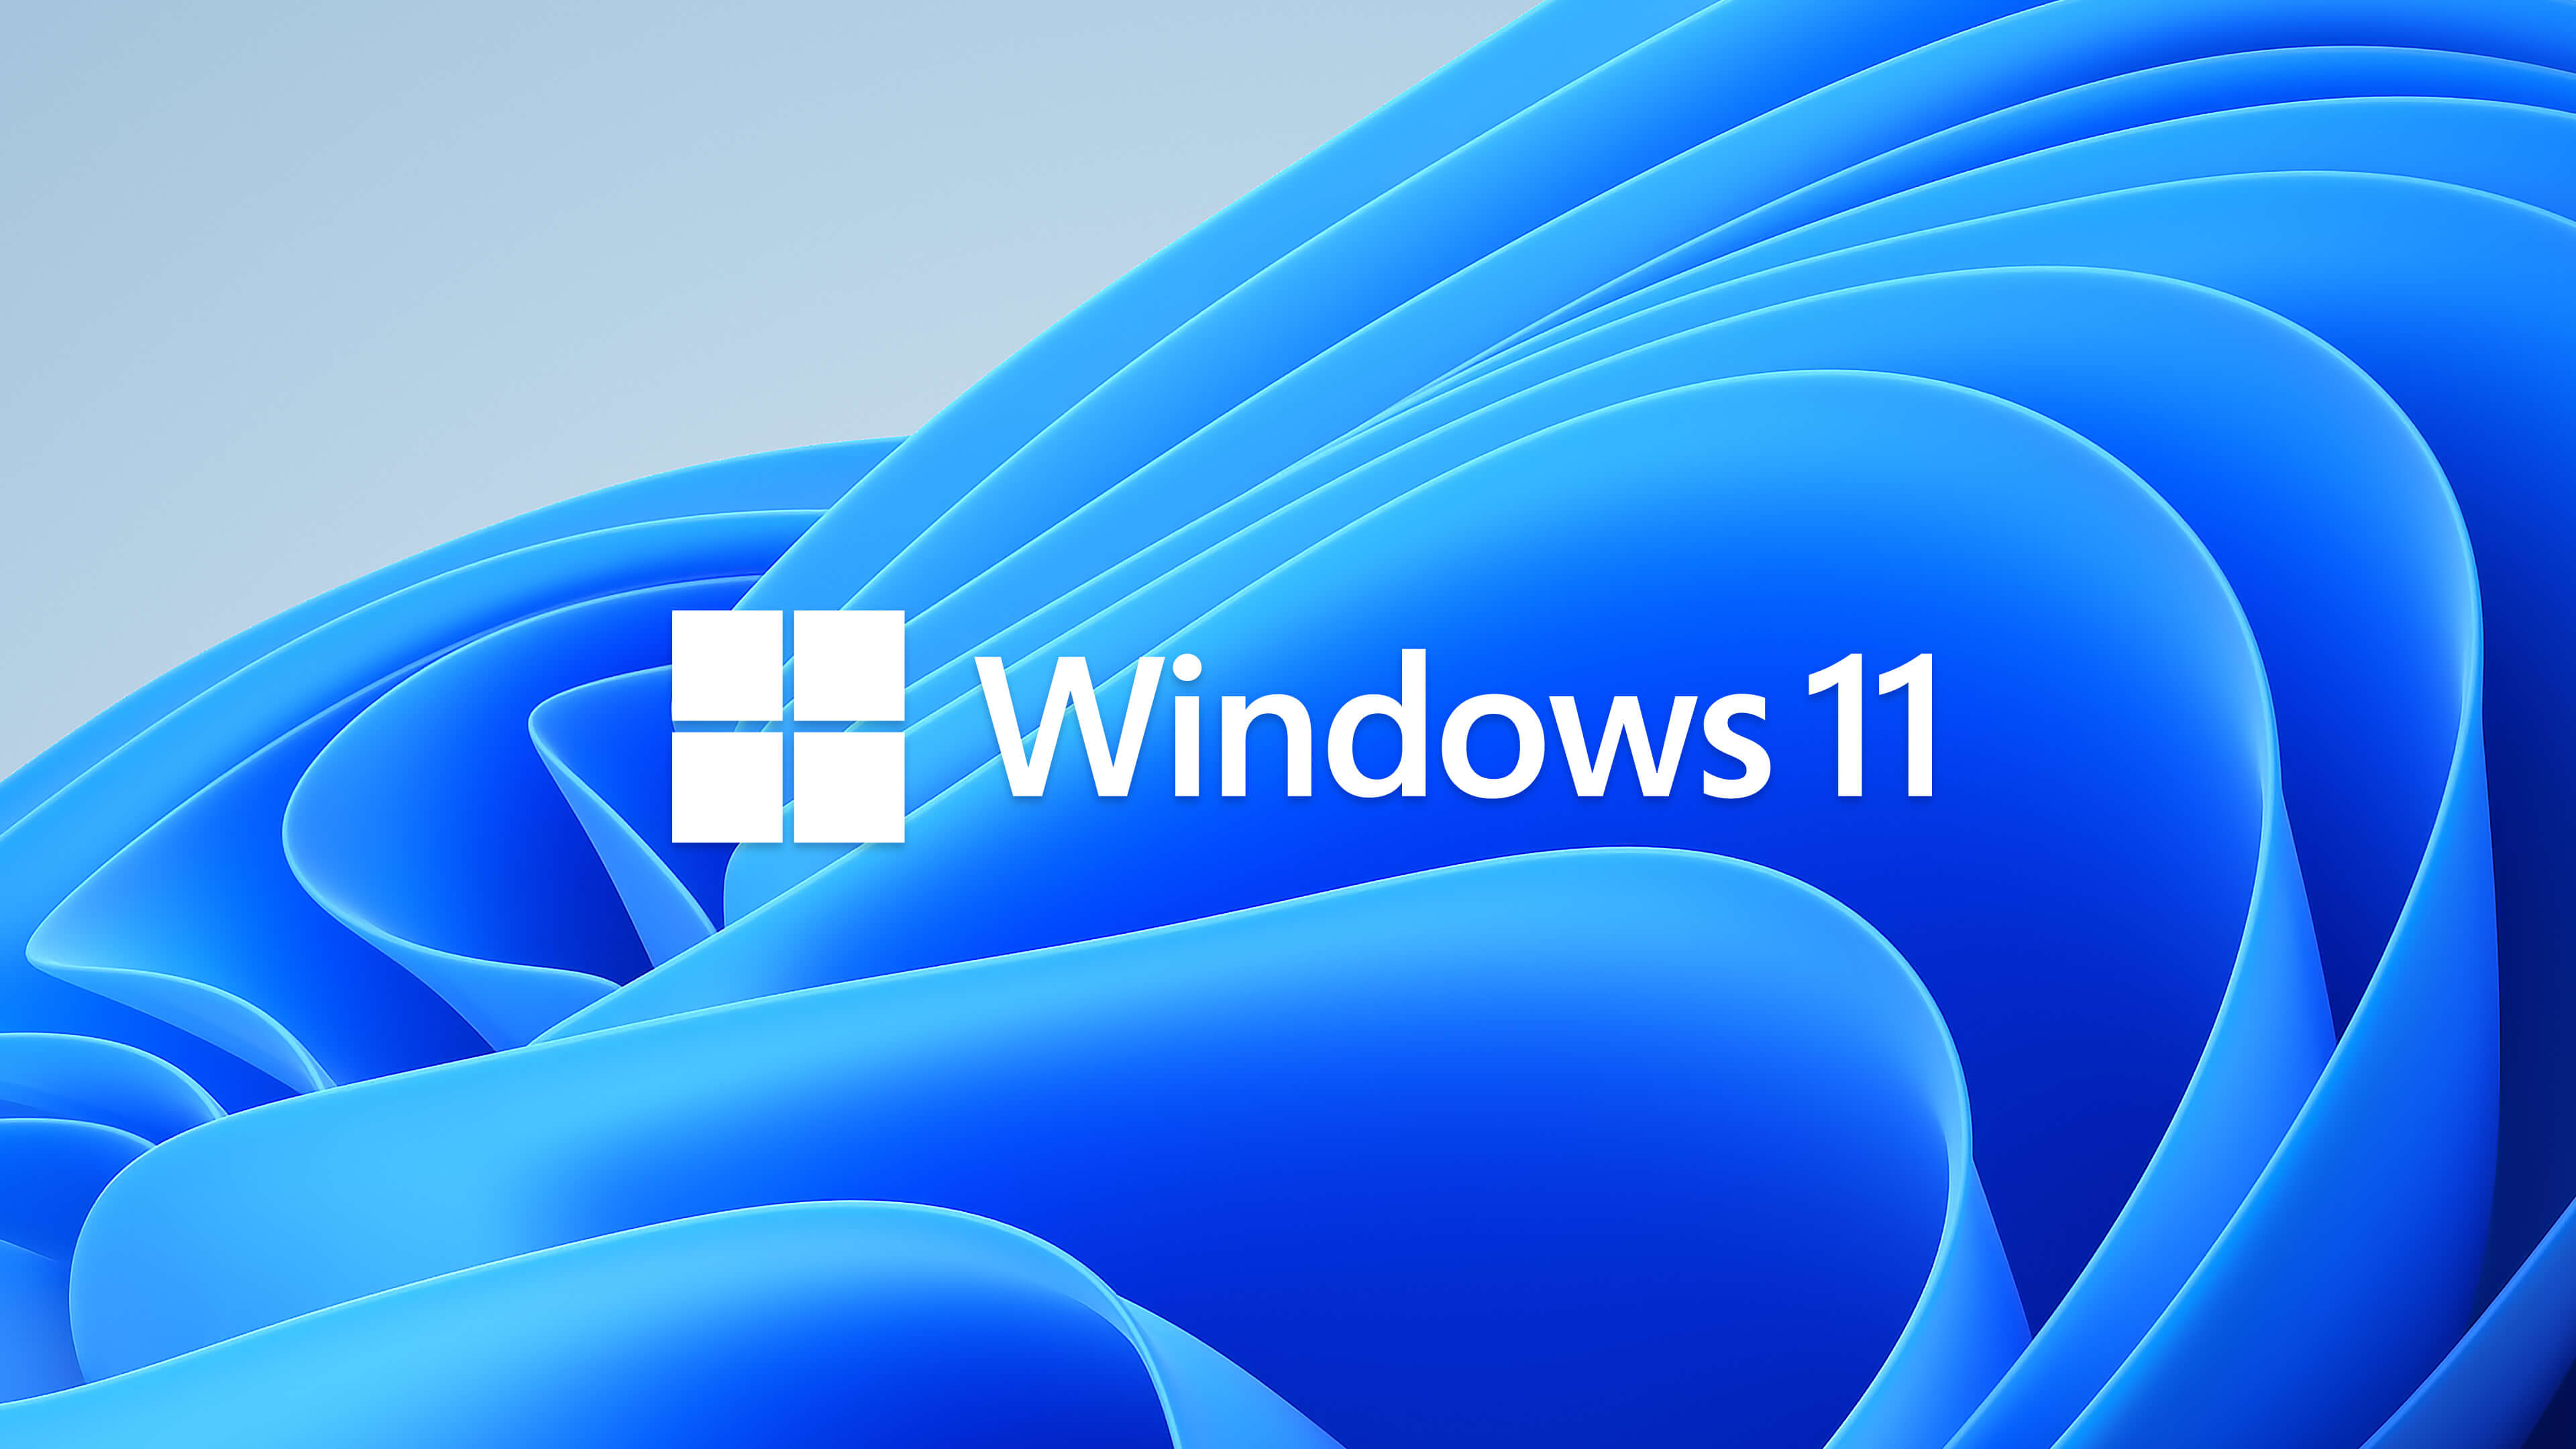 Microsoft đã chính thức ra mắt gói hình nền Win 11 chính thức 4K với rất nhiều hình ảnh đẹp mắt và hiện đại, khiến cho chỉ cần một phút được chiêm ngưỡng cũng đủ khiến bạn thấy cuốn hút.